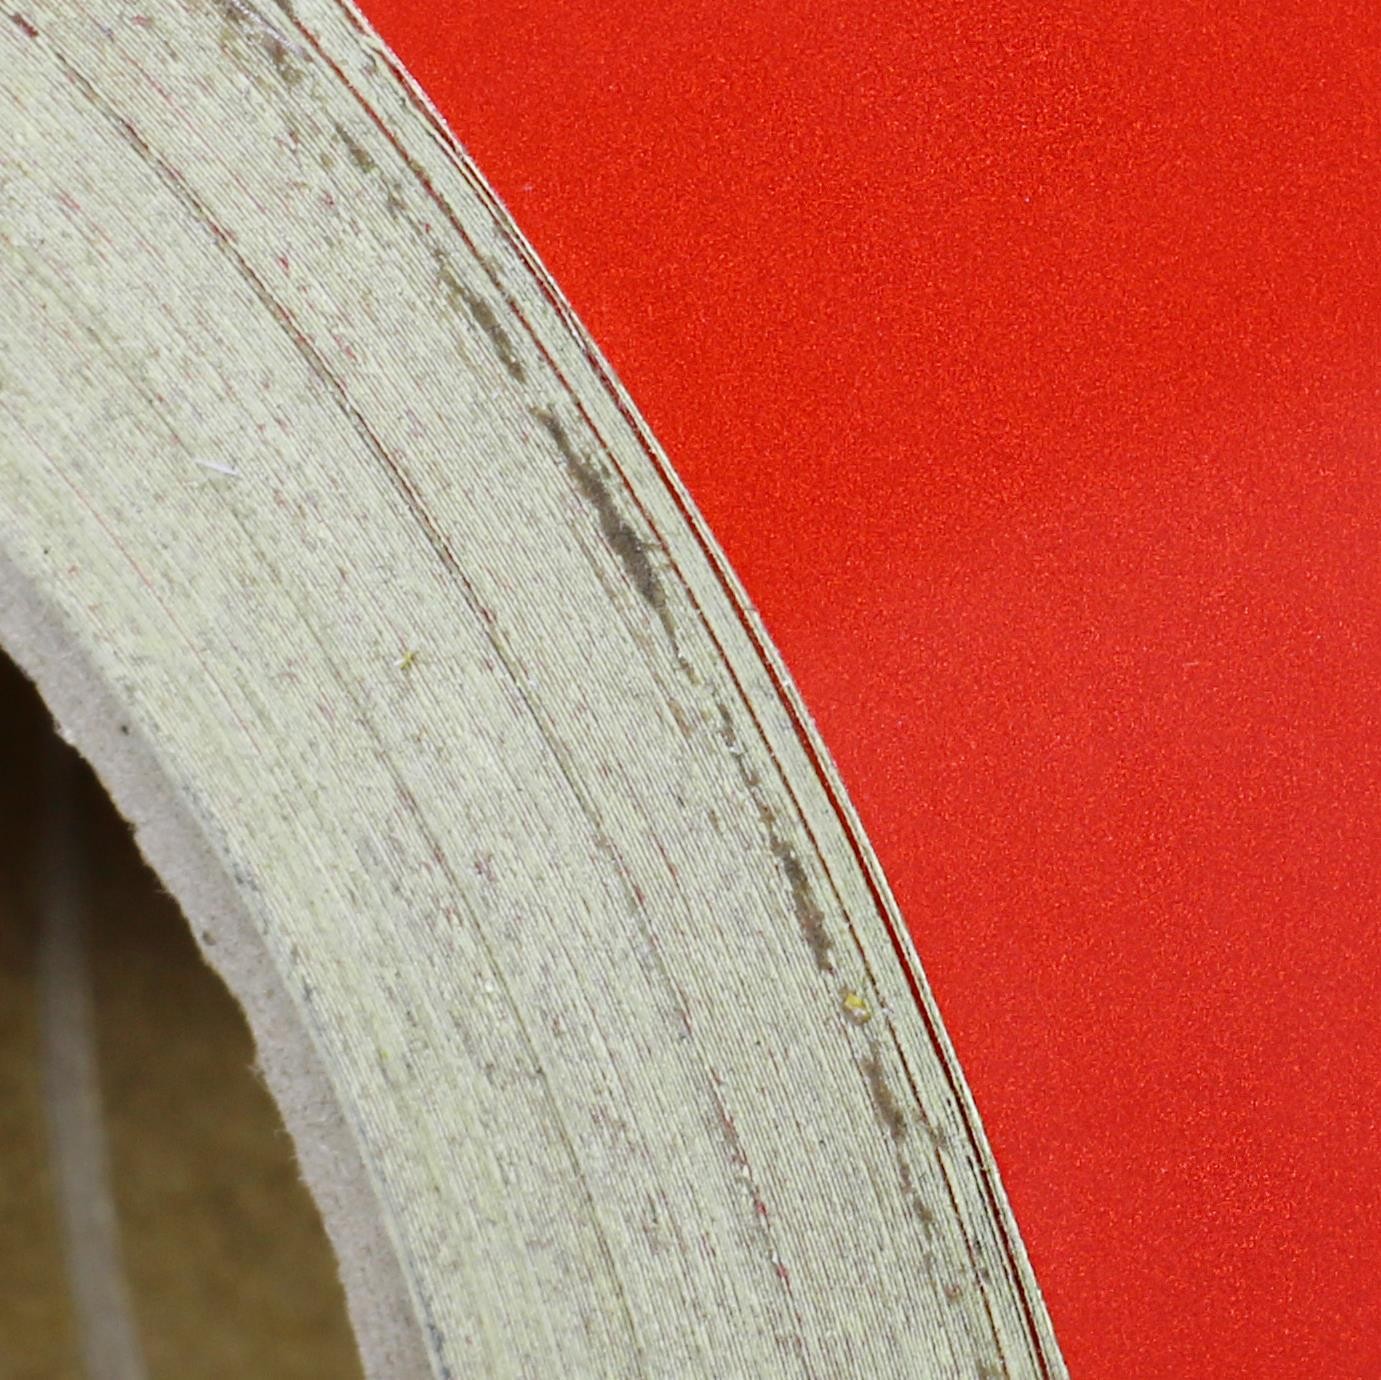 Reflektörlü Reflektif Fosforlu Şerit Bant Kırmızı Düz Reflekte İkaz Bandı 6 CM 1 METRE